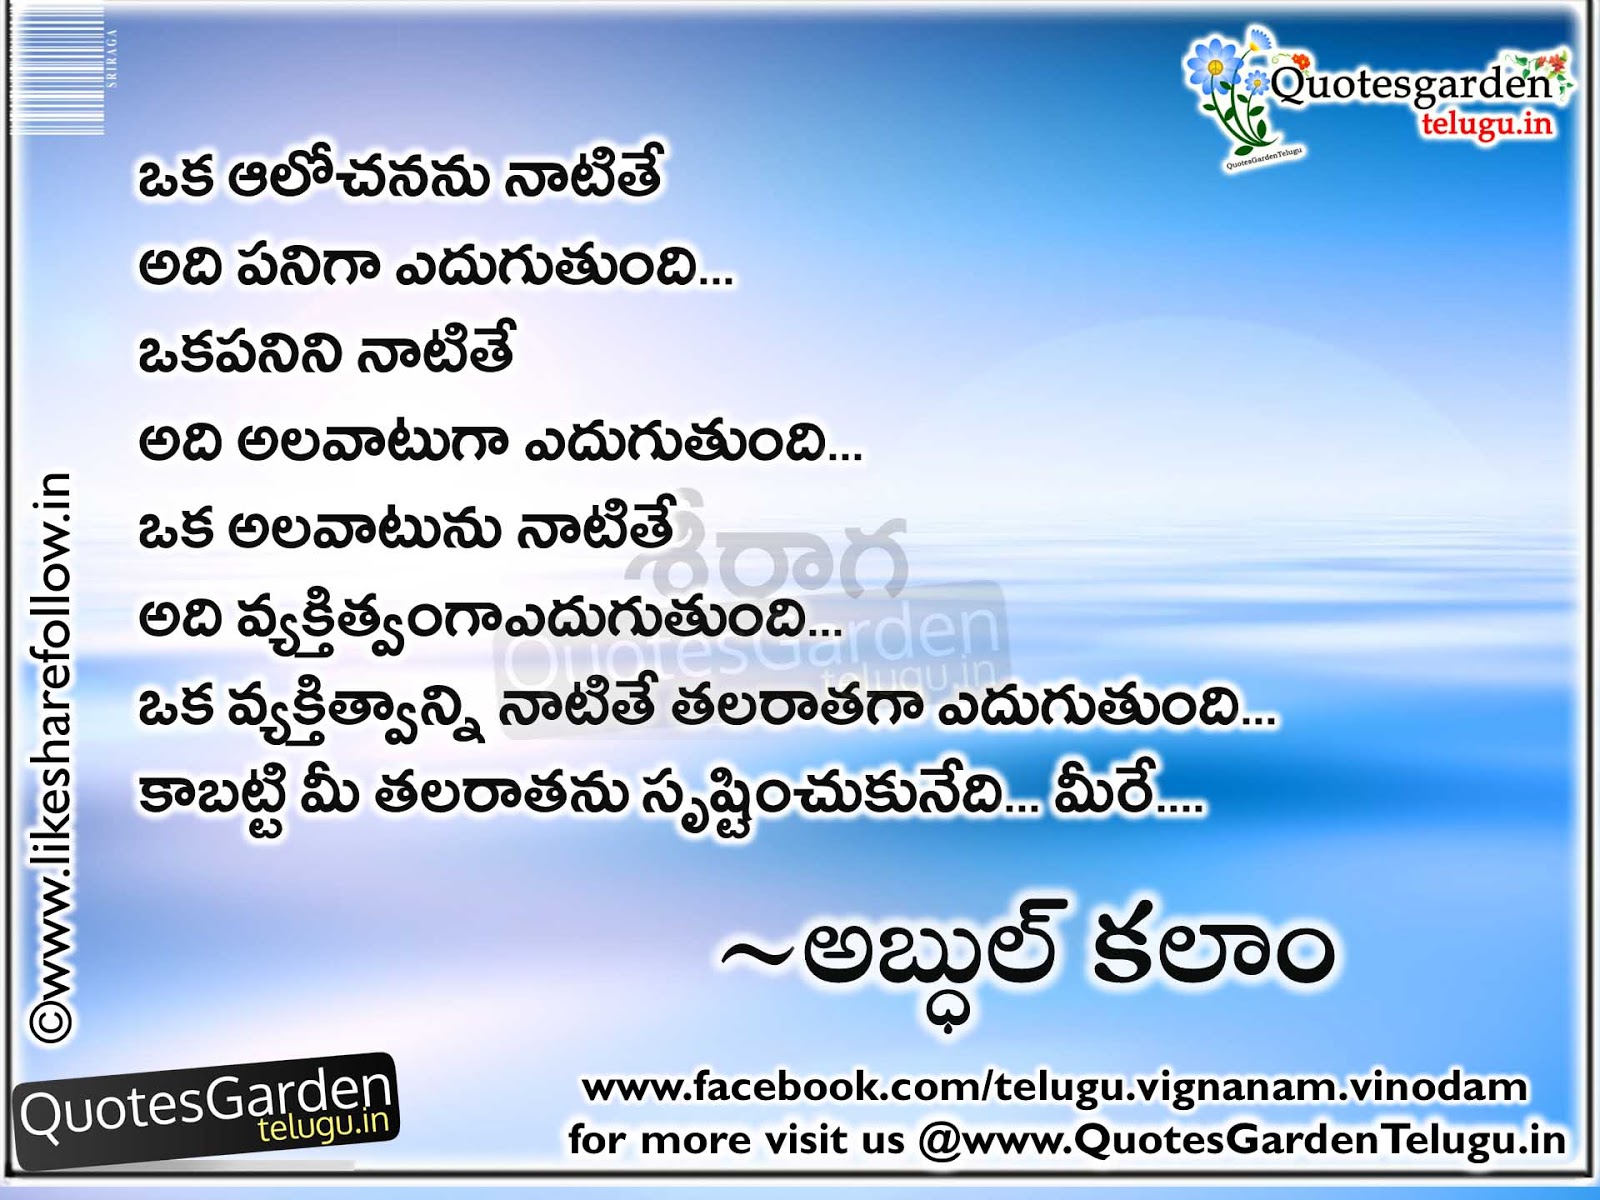 Telugu Best Life Quotes from Abdul Kalam